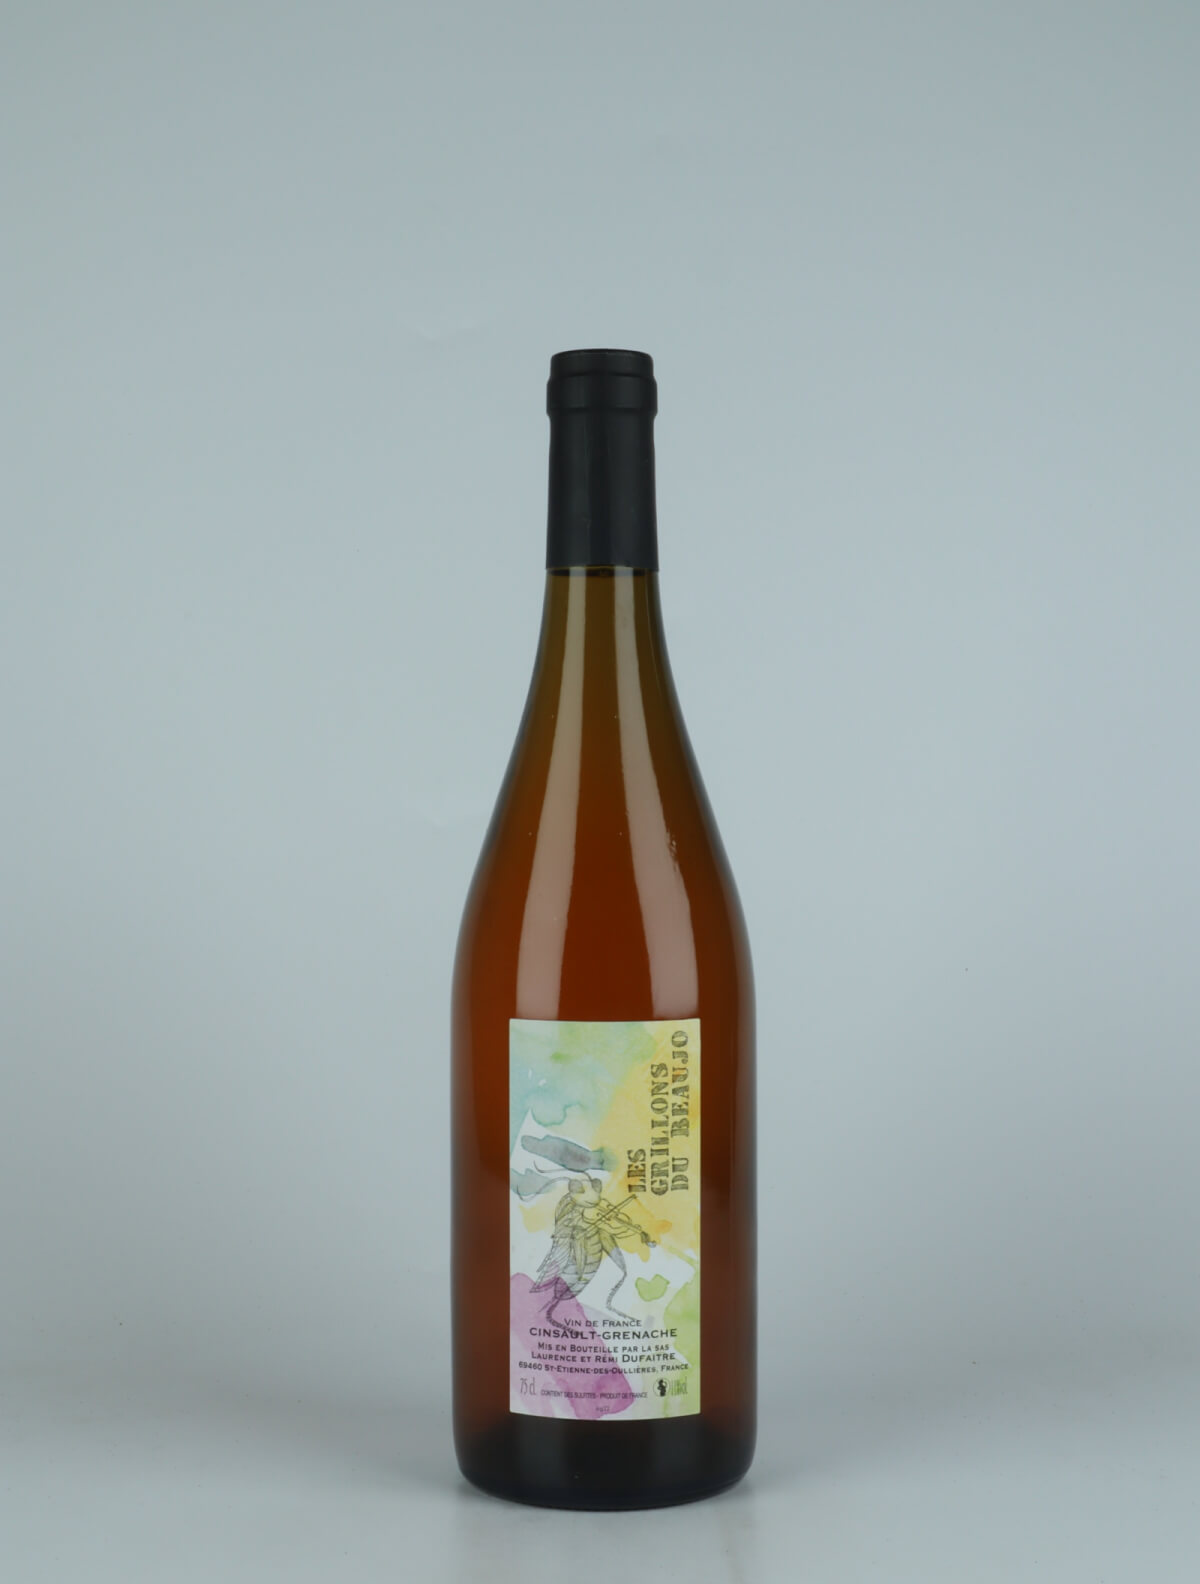 A bottle 2022 Les Grillons de Beaujo Rosé from Laurence & Rémi Dufaitre, Beaujolais in France